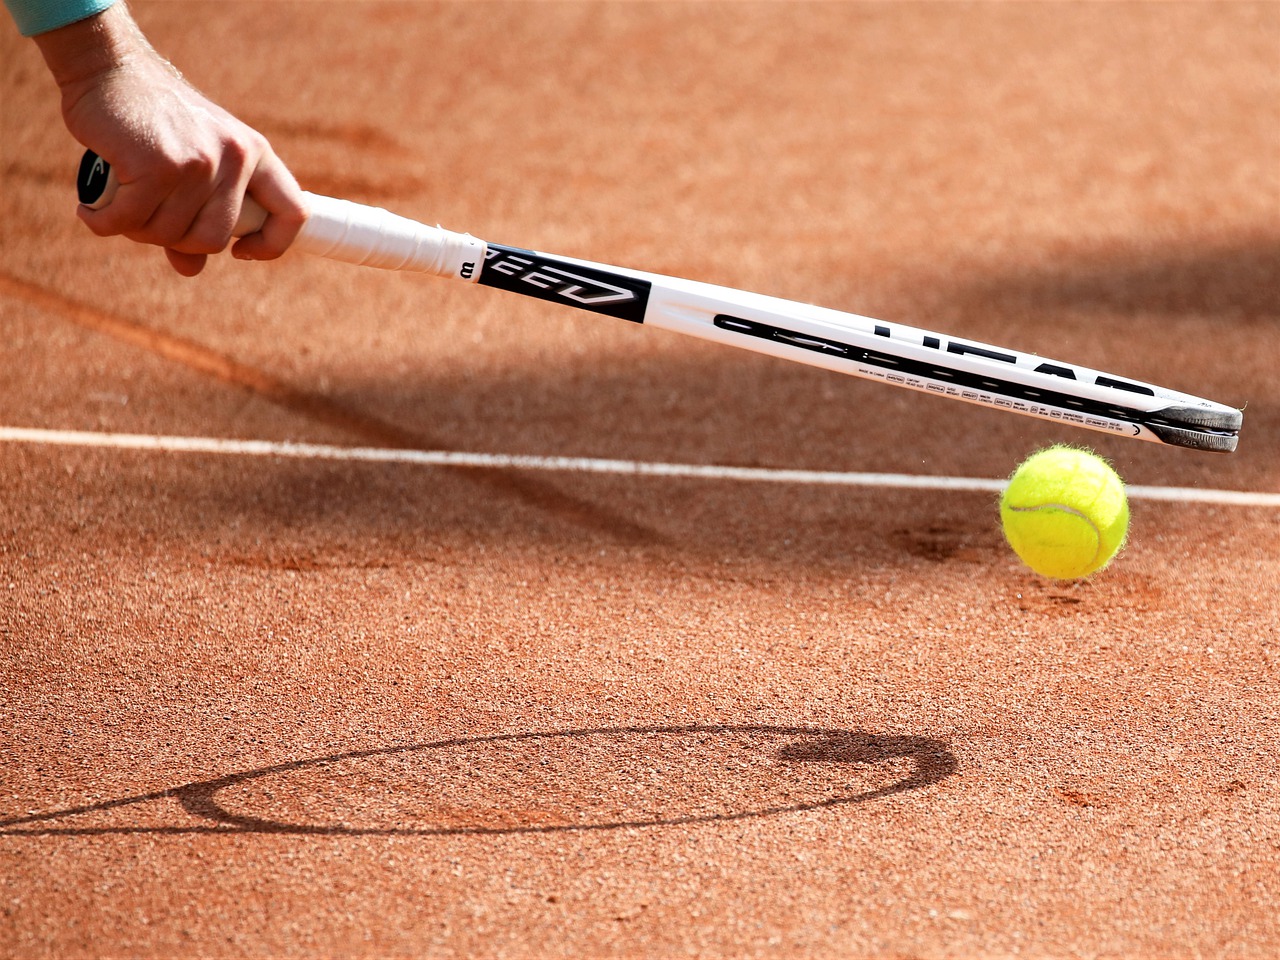 Tennisclub Ebstorf - Ein Tennisschläger bei der Ballaufnahme vom Boden.